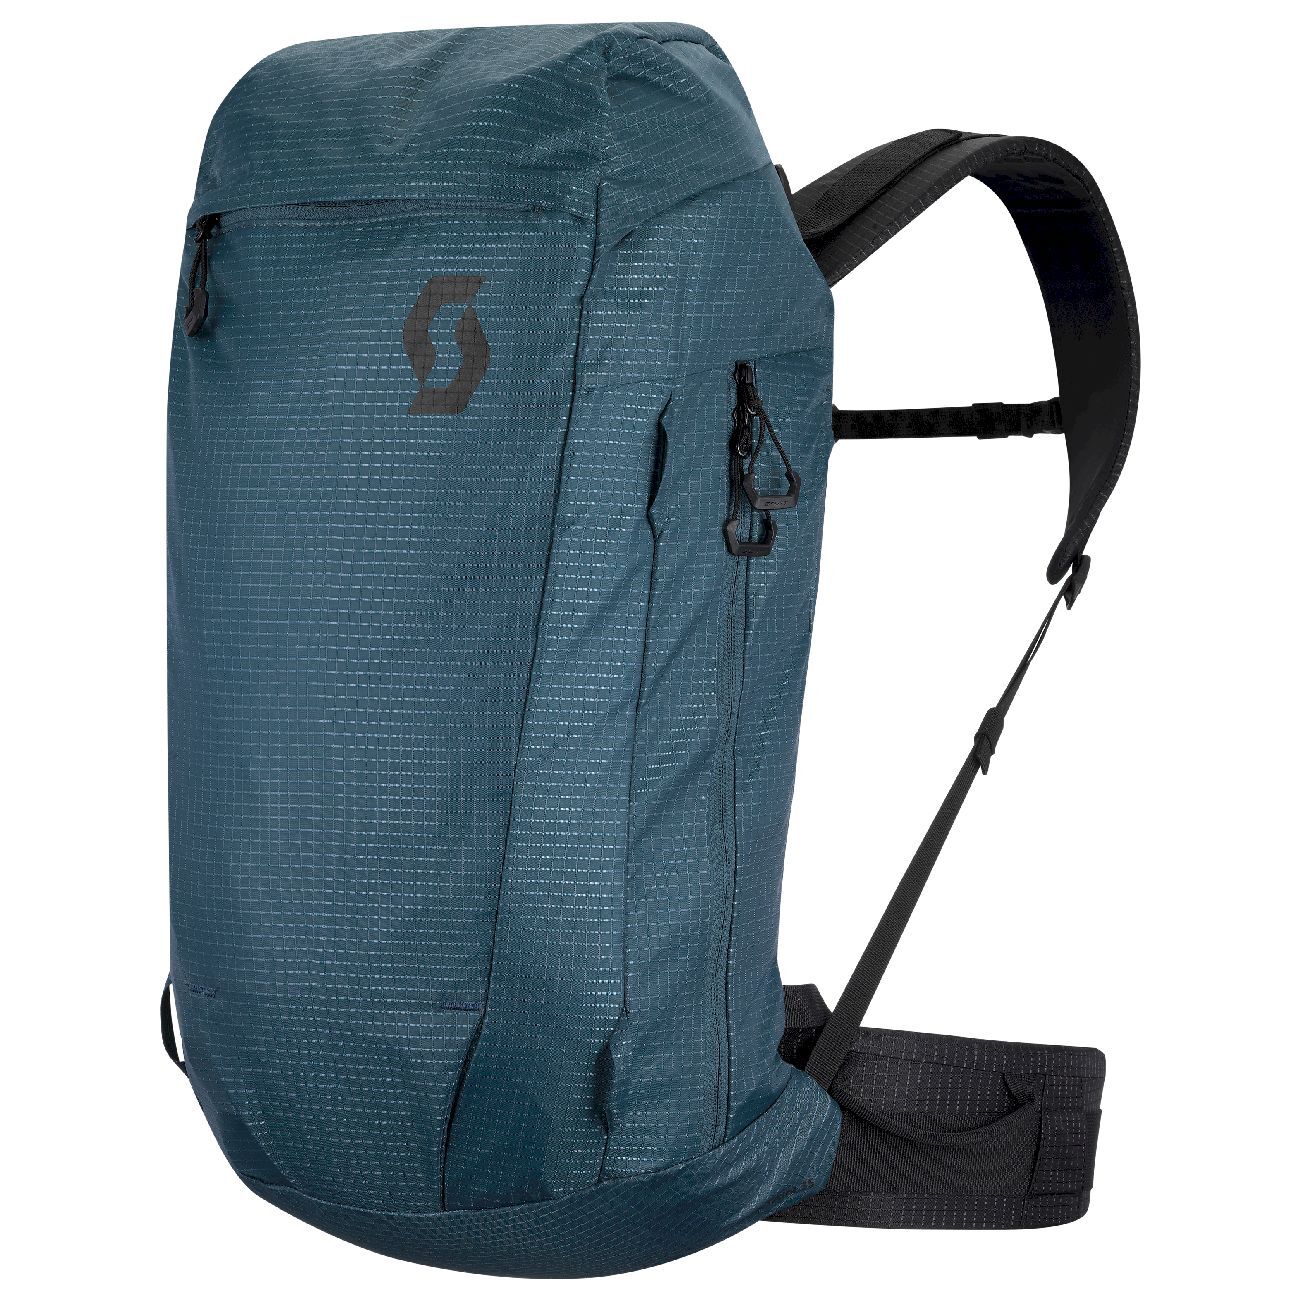 Scott Pack Mountain 35 - Ski backpack